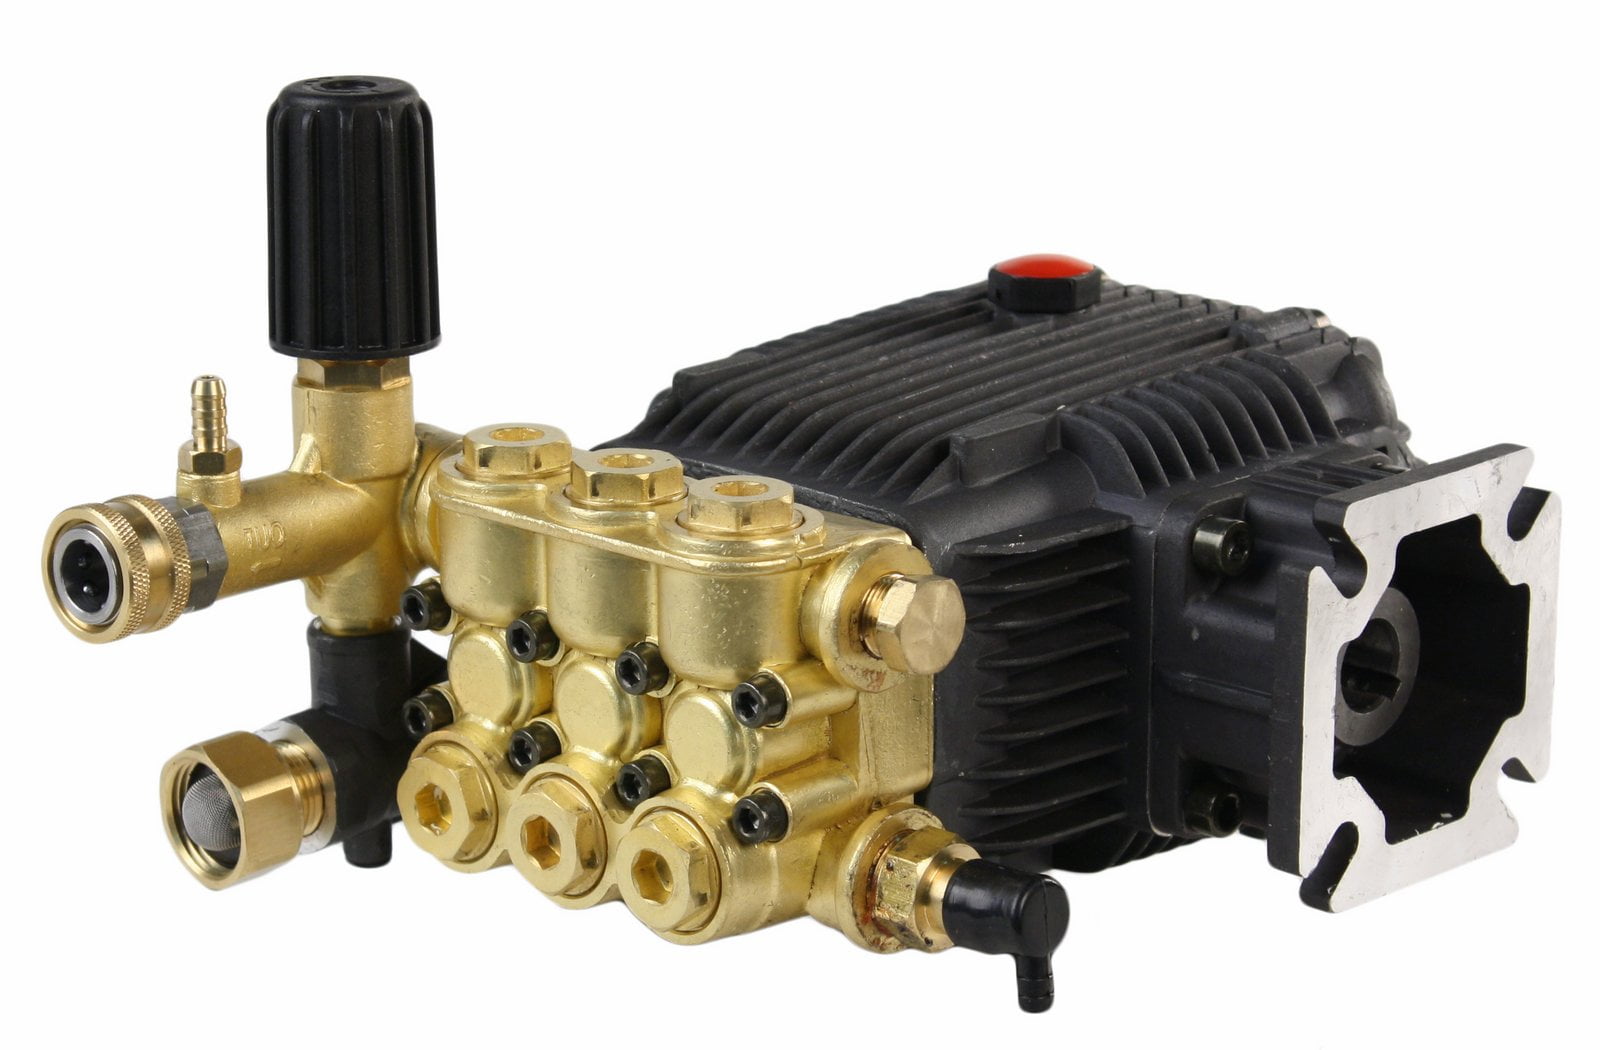 Horizontal Power Pressure Washer Water Pump for Honda Engine Sprayers 3000 PSI 